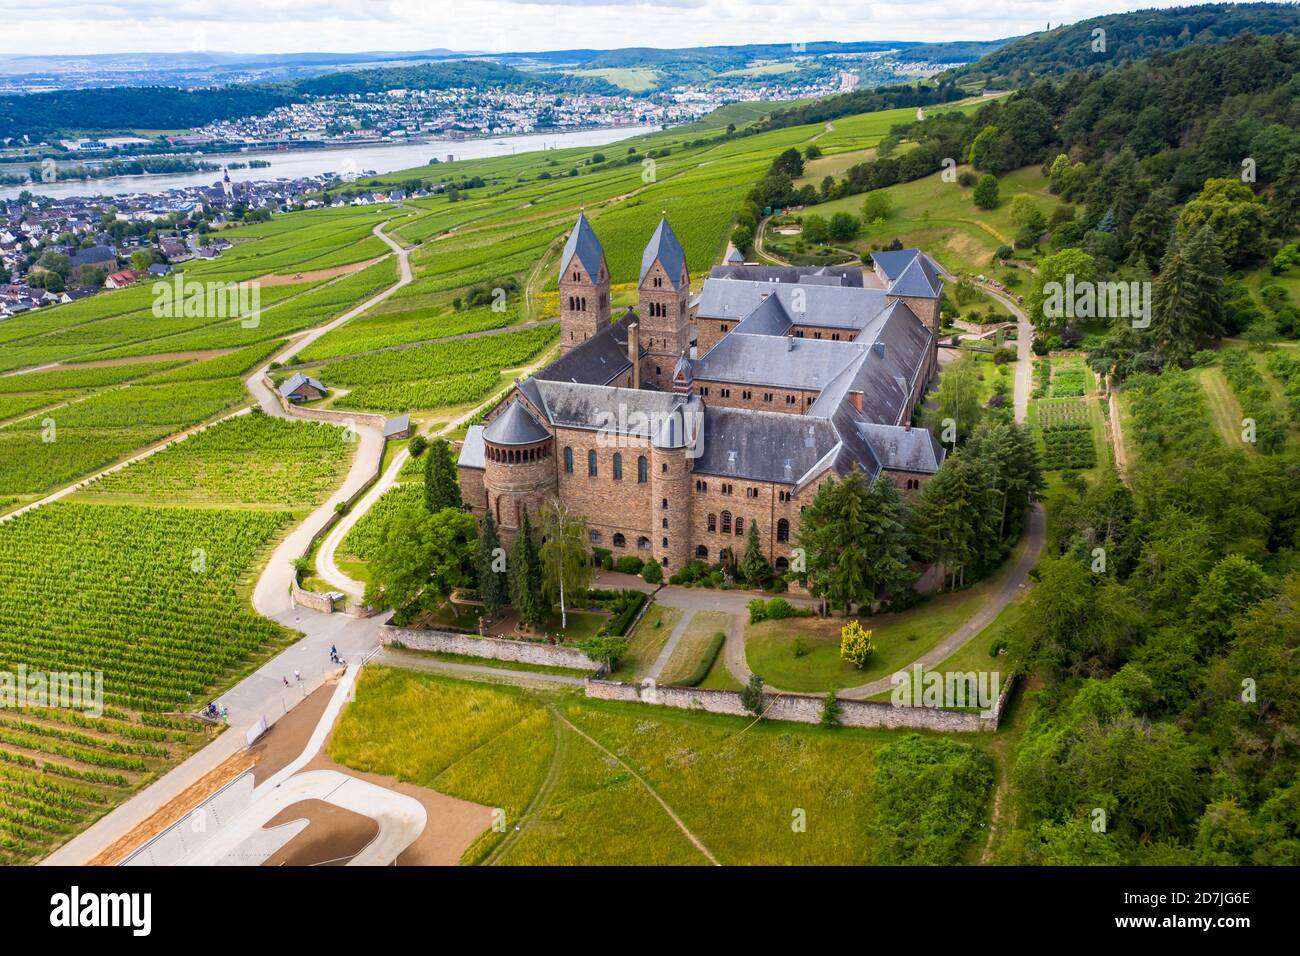 Germany, Hesse, Eibingen, Helicopter view of Eibingen Abbey in early autumn Stock Photo